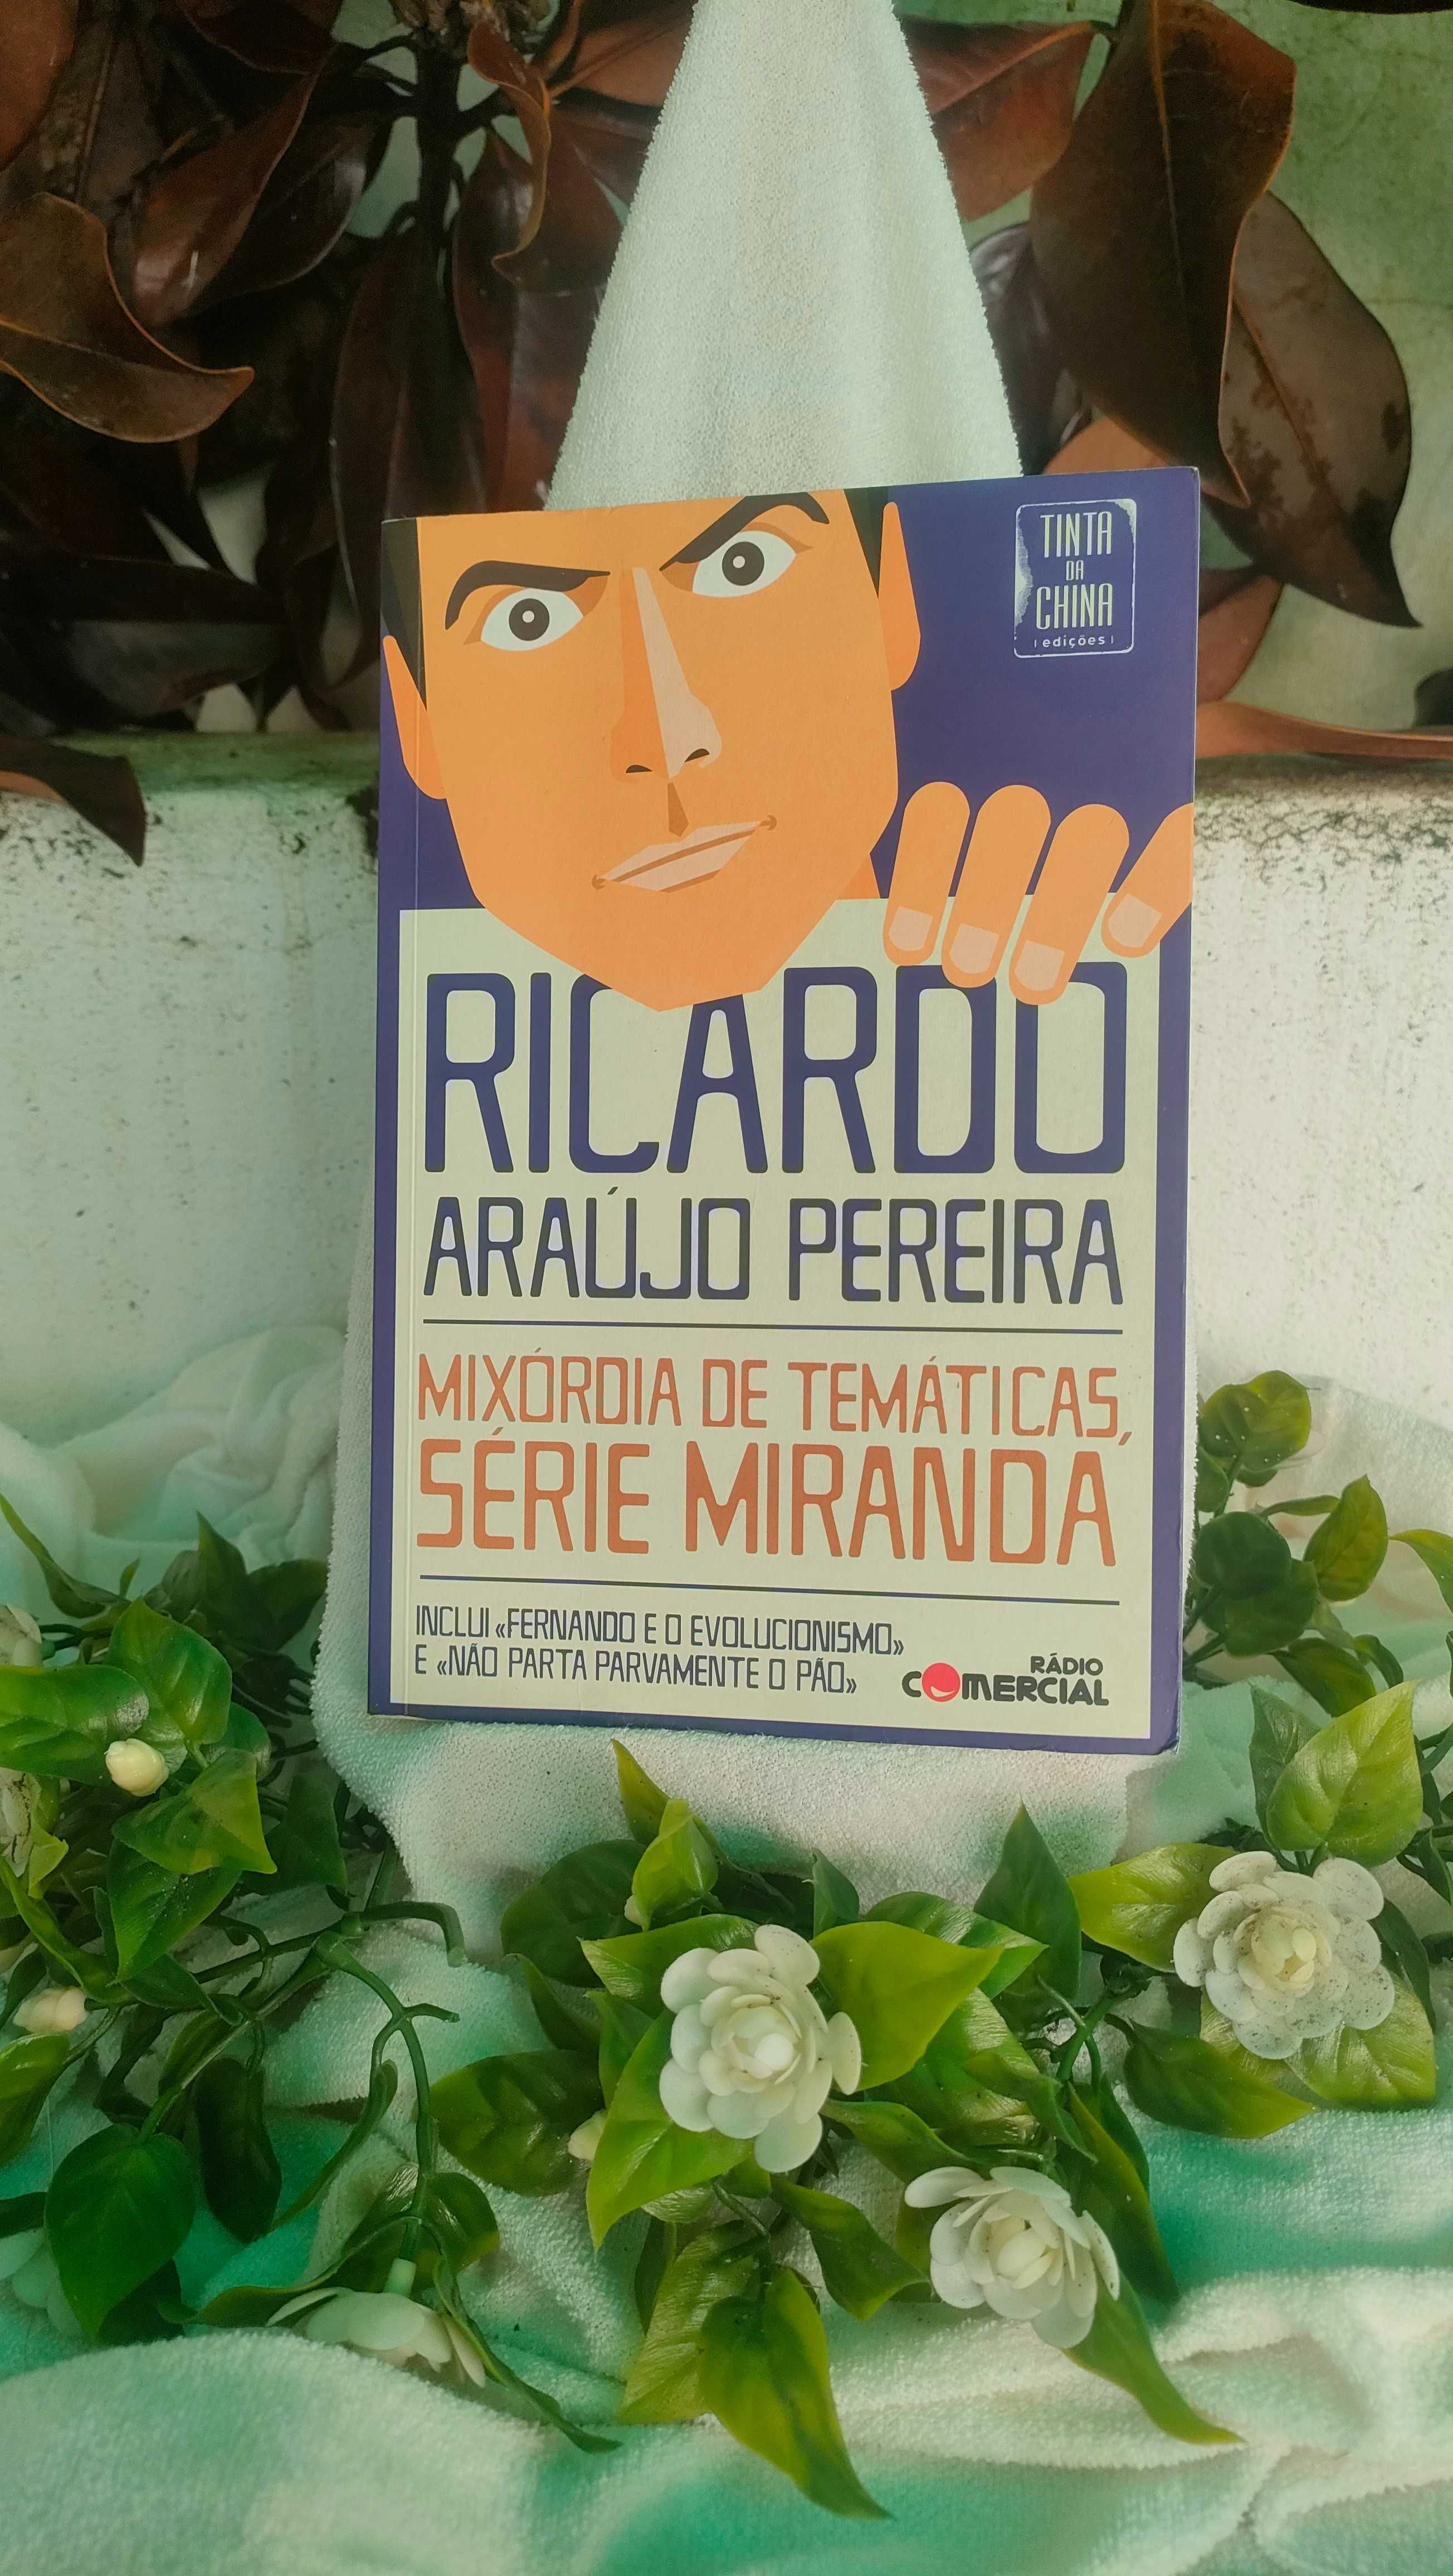 Mixórdia de Temáticas, Série Miranda
de Ricardo Araújo Pereira